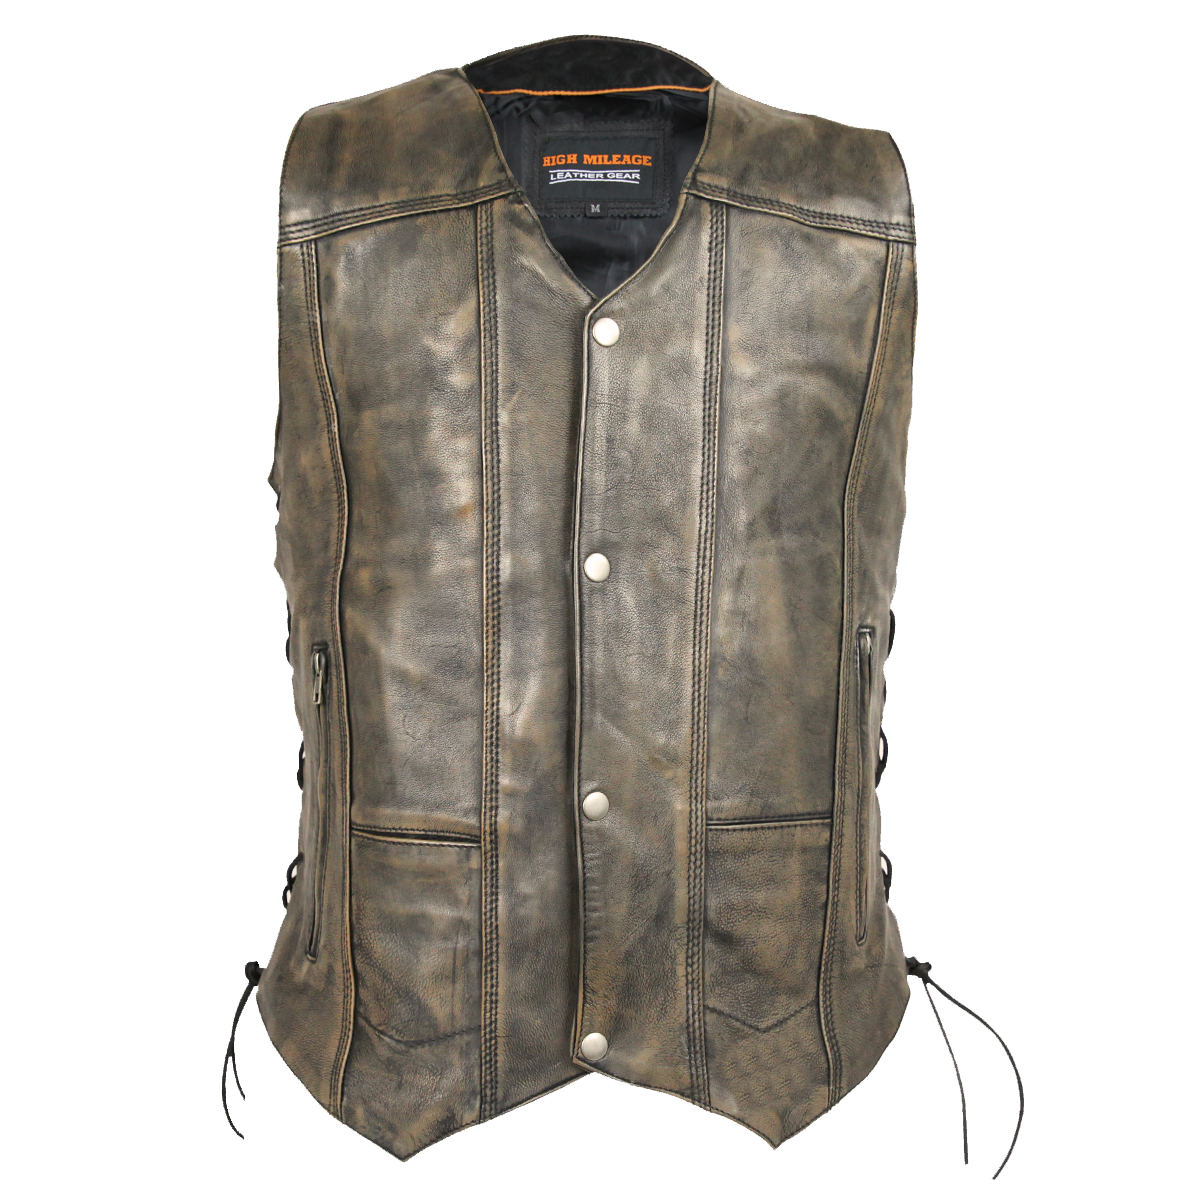 Vance Leather High Mileage Men's Distressed Brown 10 Pocket Vest